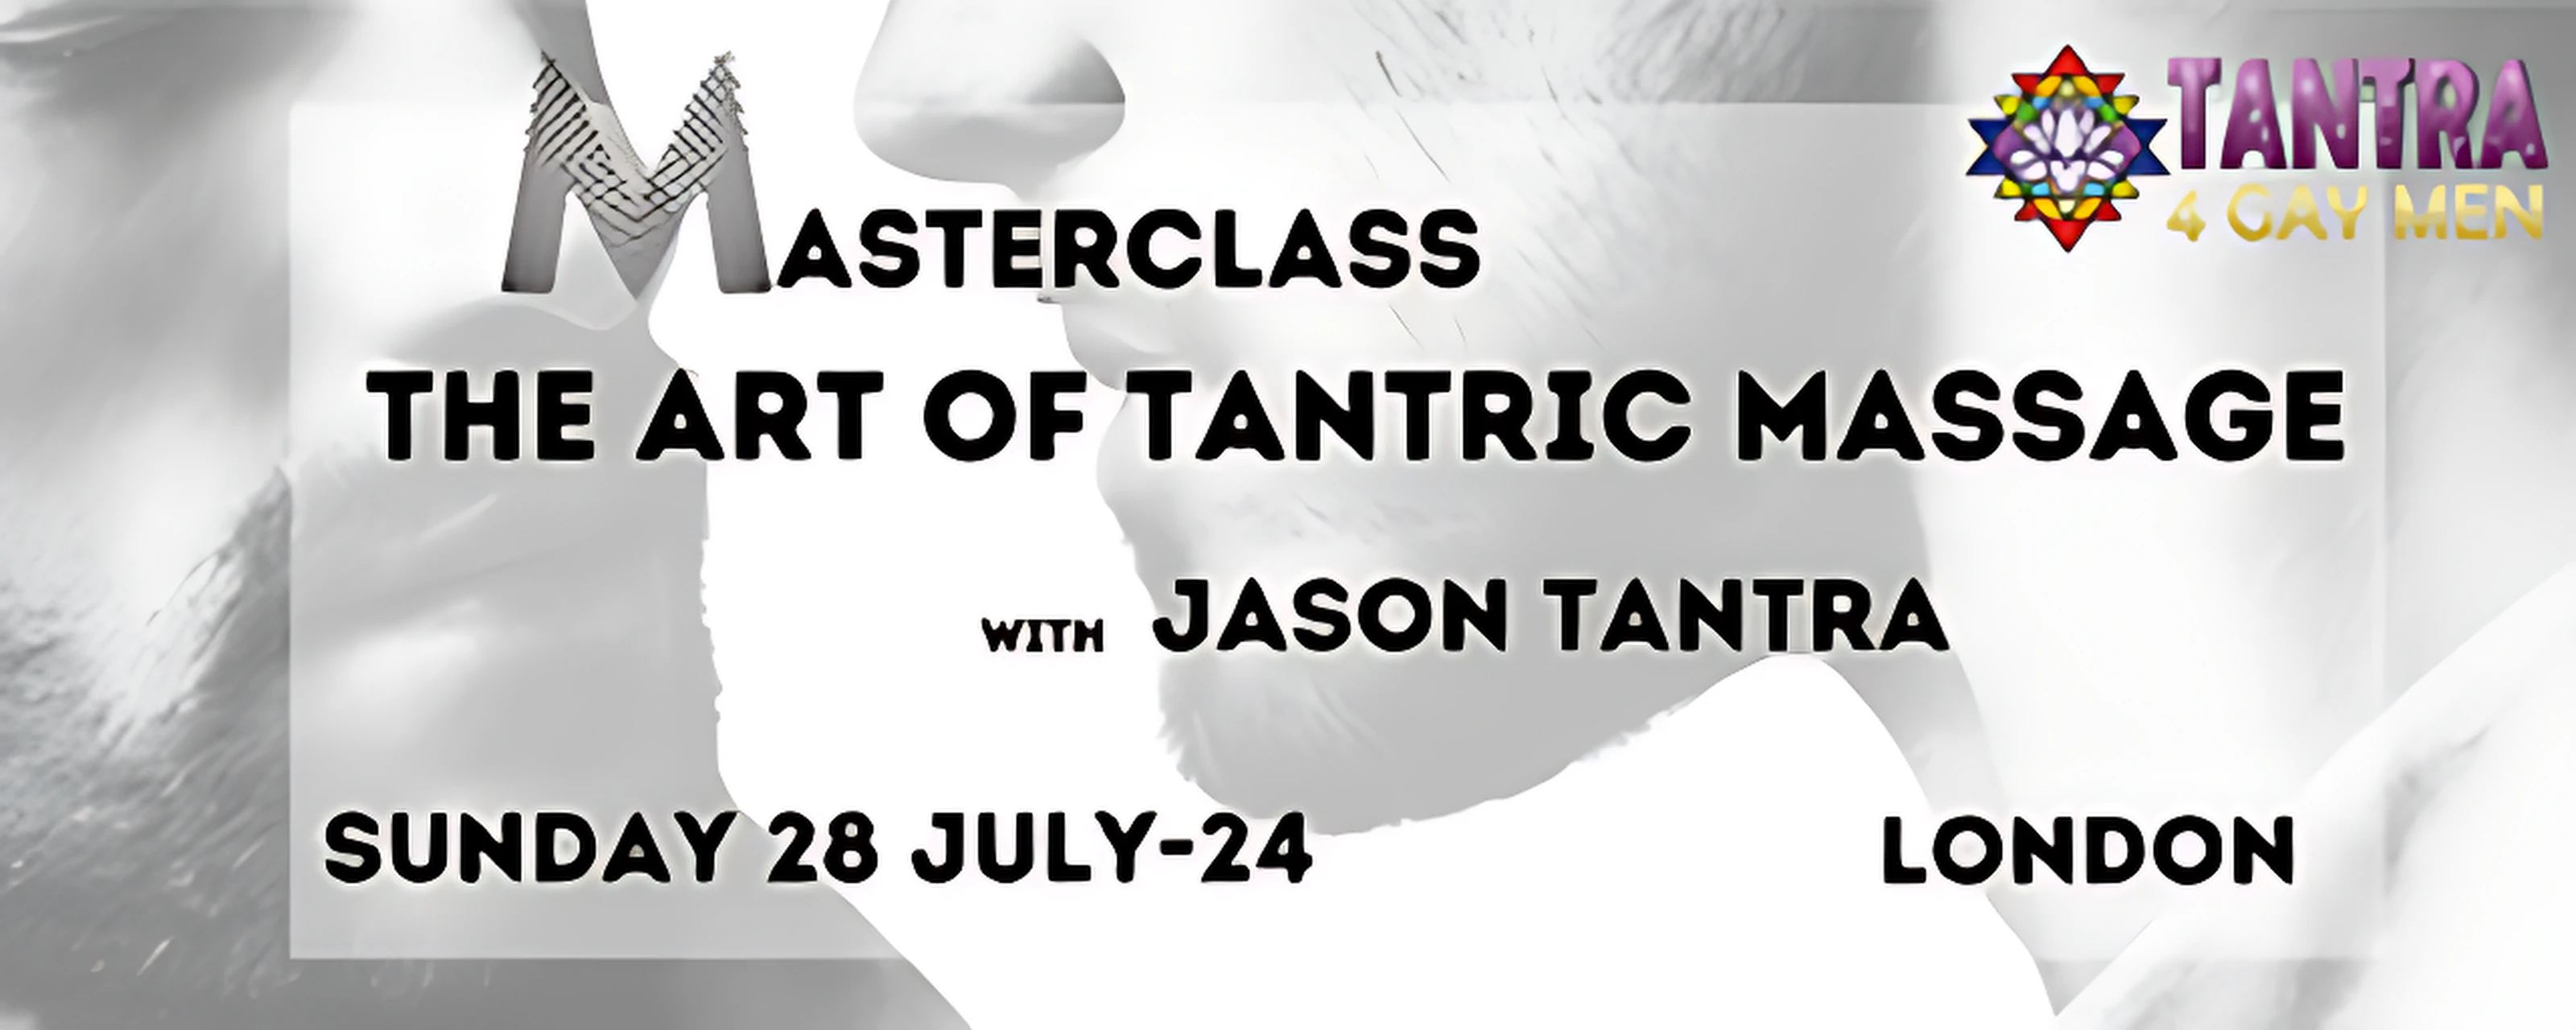 1-dagers mesterklasse: Art of Tantrisk Massasje